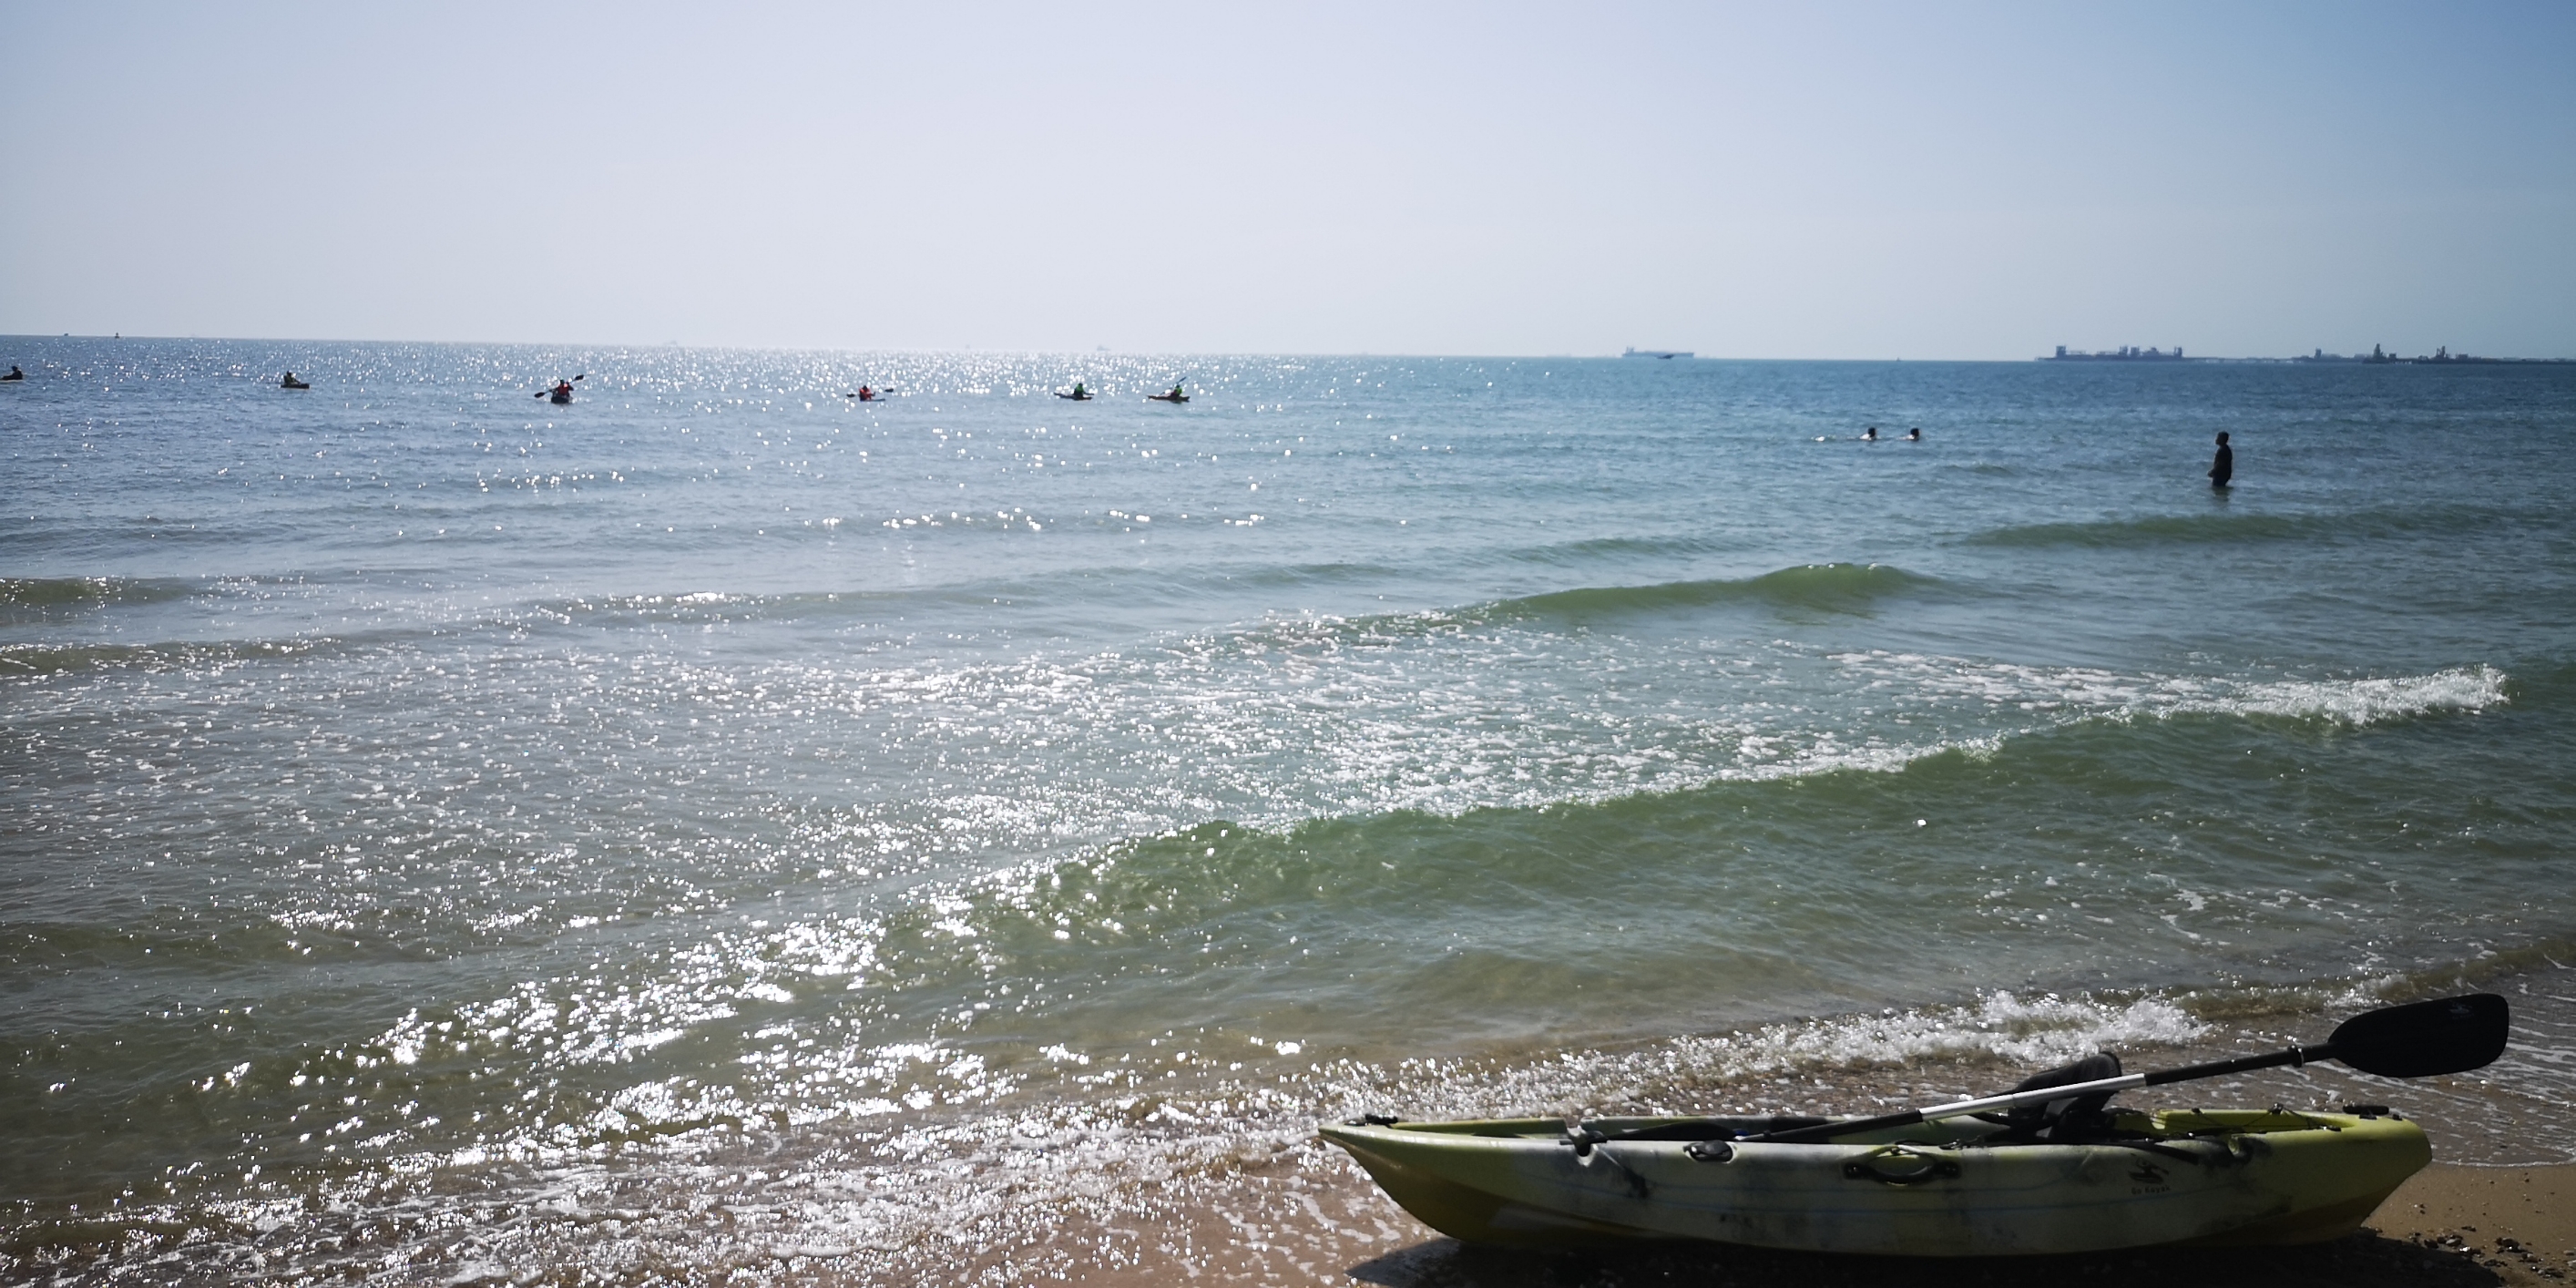 科威特曼卡夫海滩，阳光灿烂，沙滩礁石，酒店林立。周末时段，游客纷纷出来冲浪，划船。悠闲时光。